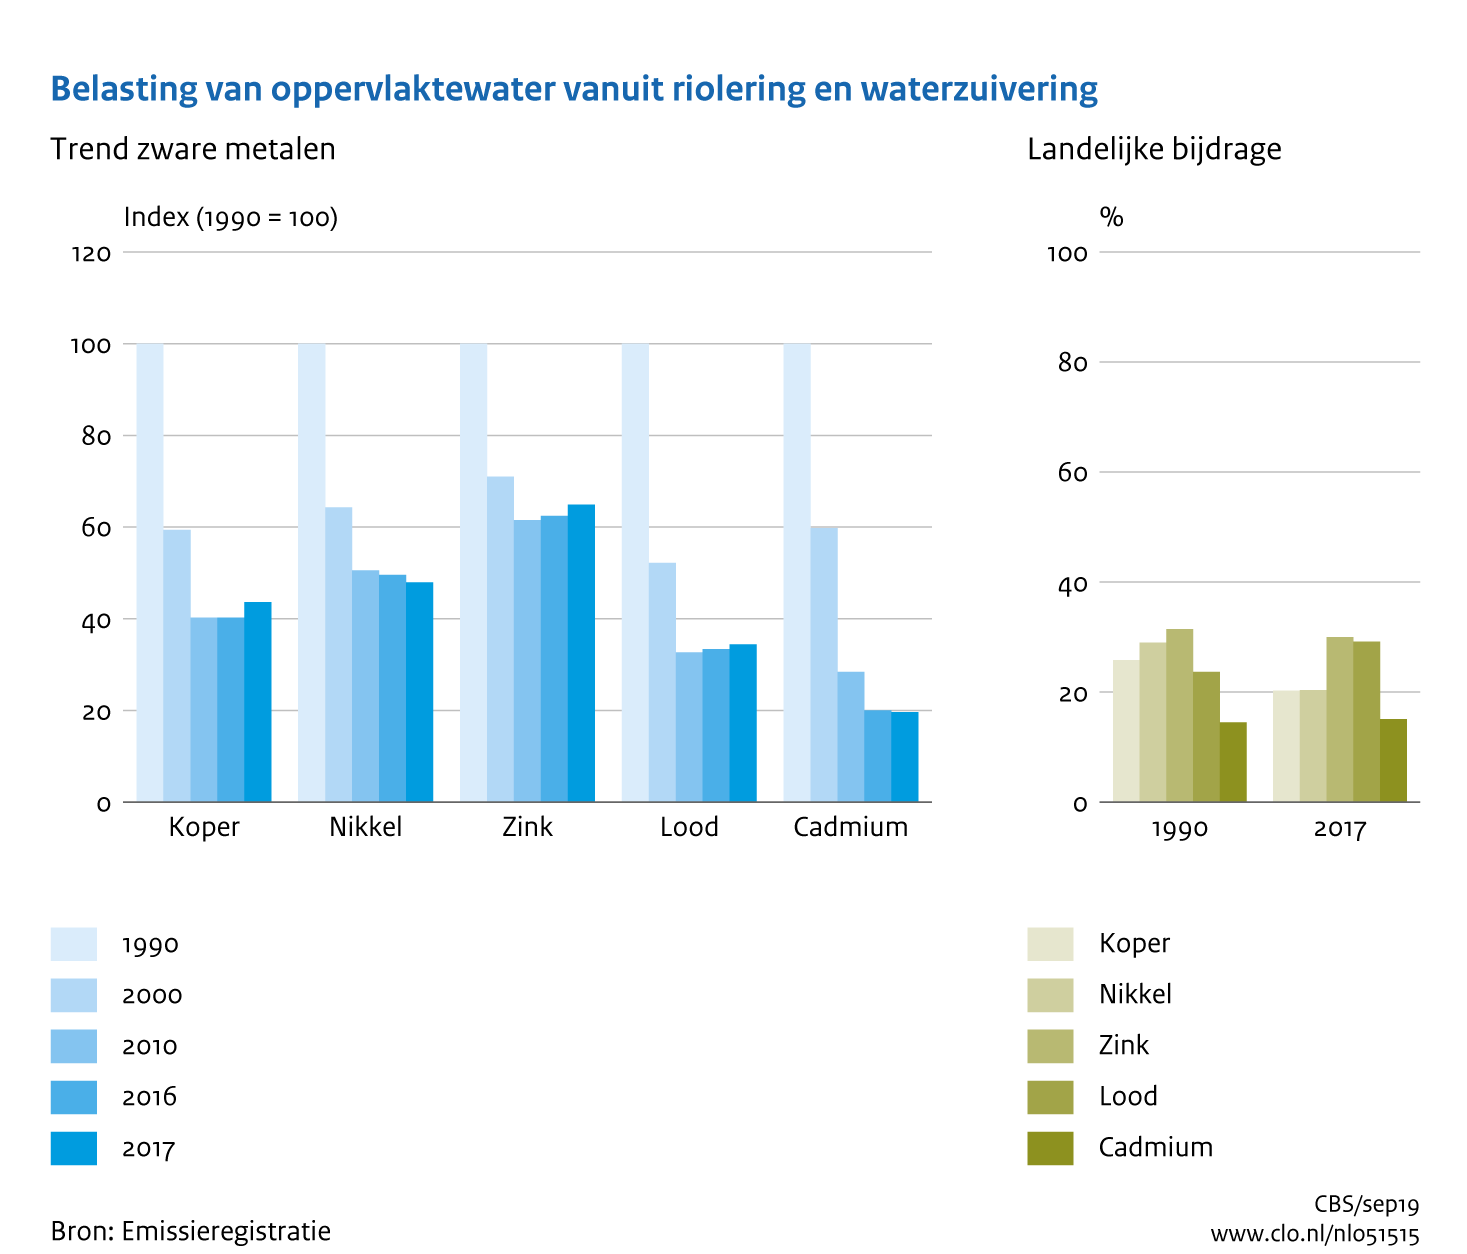 Figuur Belasting oppervlaktewater vanuit riolering en rioolwaterzuivering met zware metalen. In de rest van de tekst wordt deze figuur uitgebreider uitgelegd.